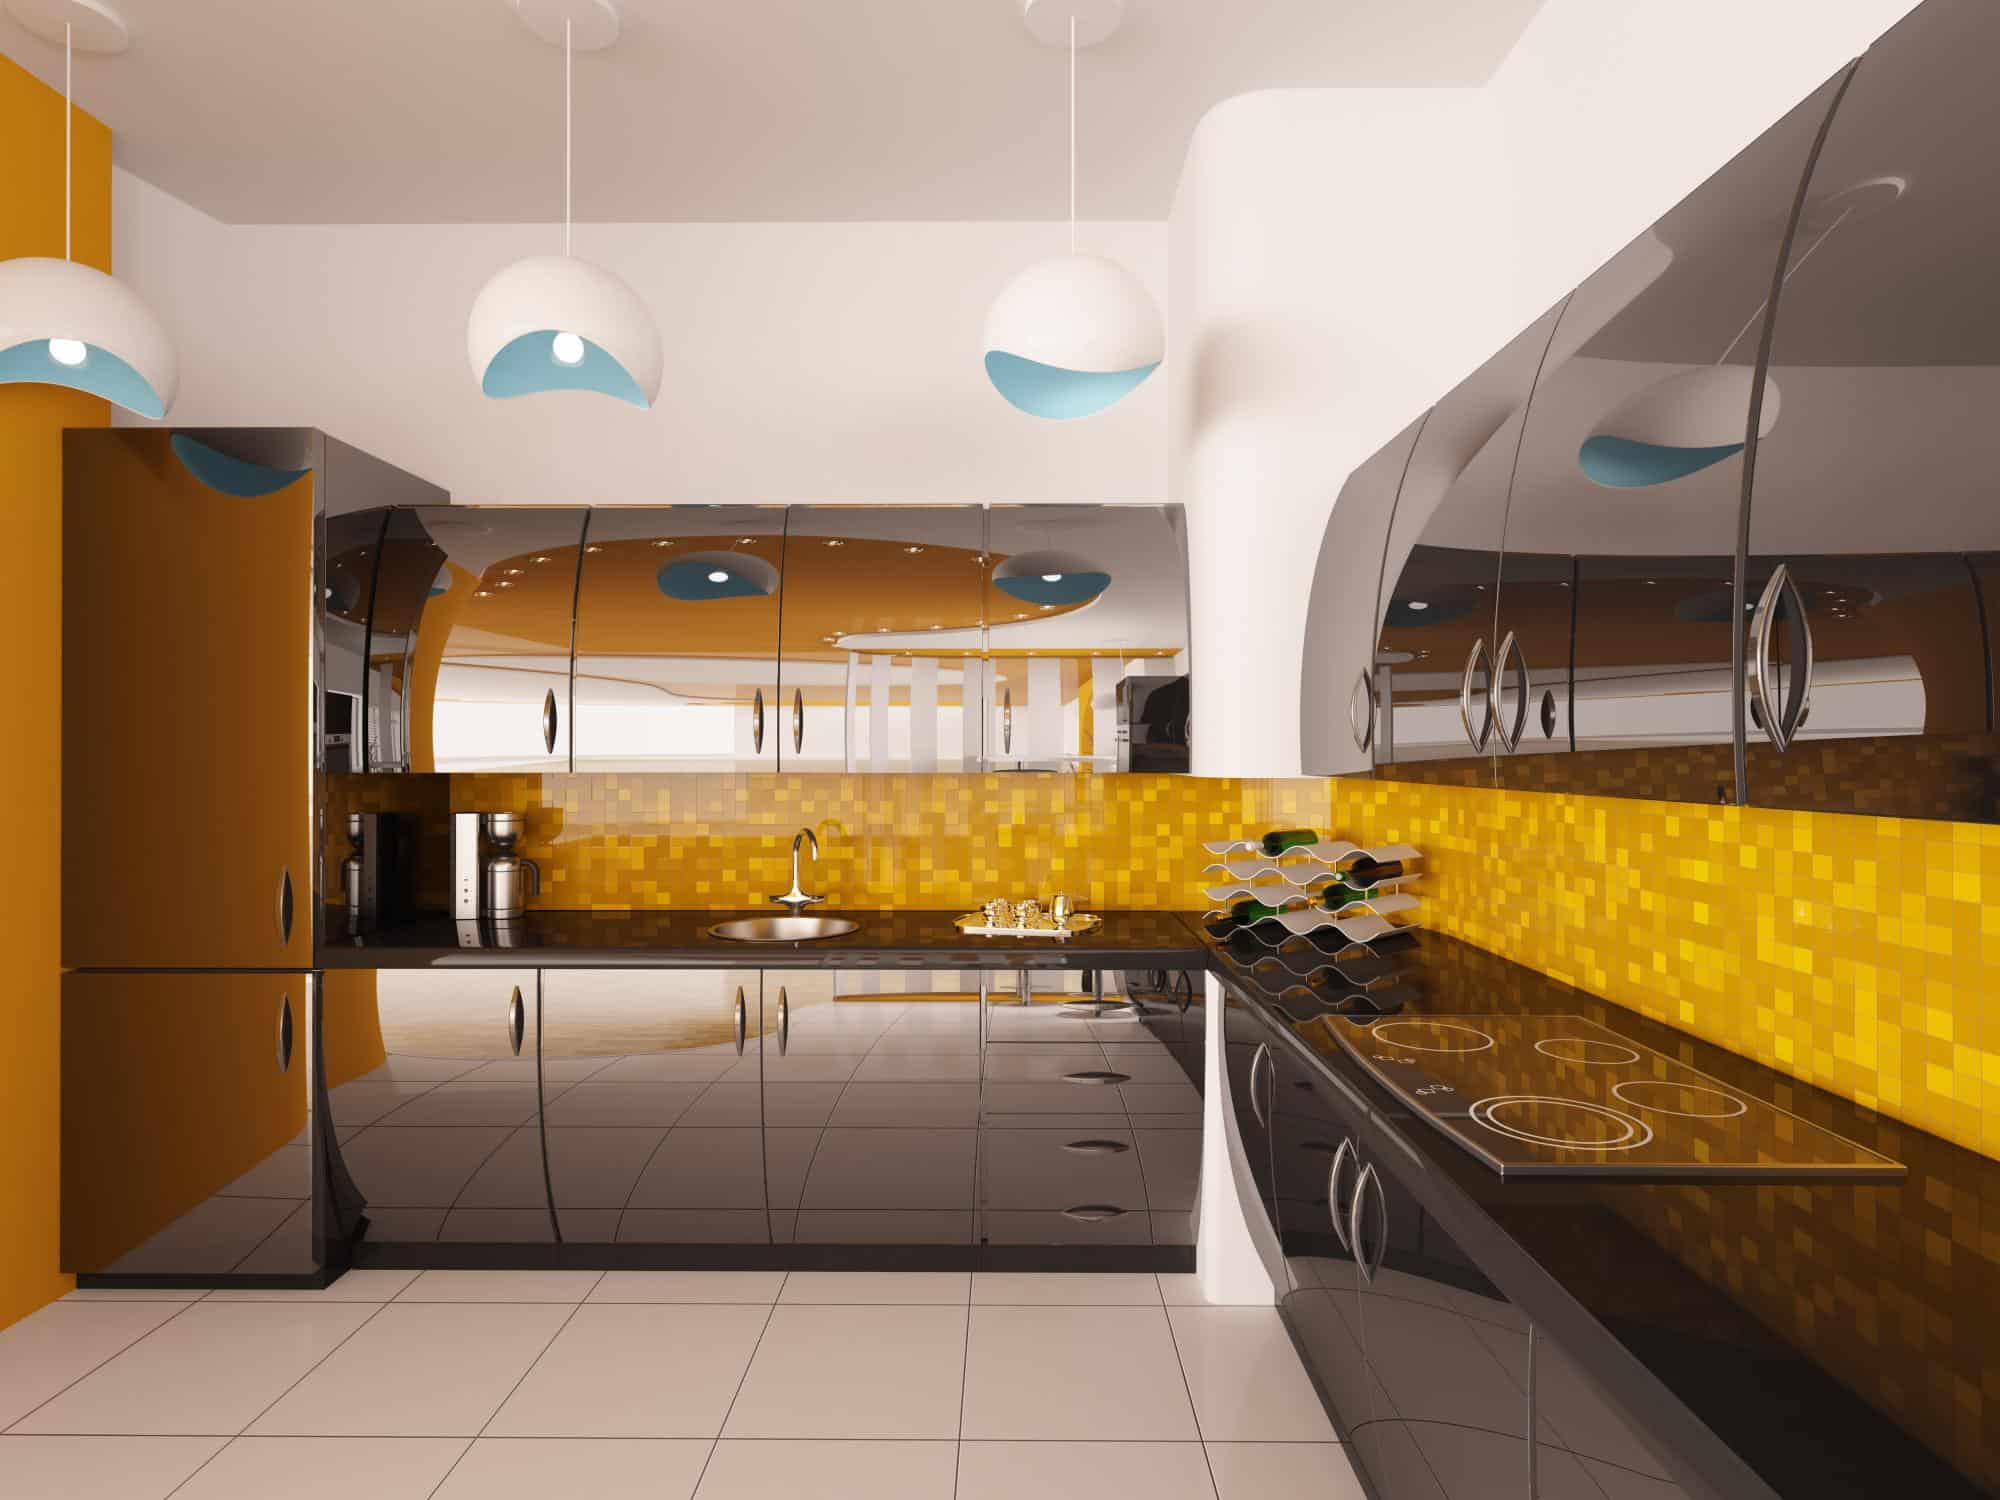 Milton Kitchen Renovations - Kitchen Design 2